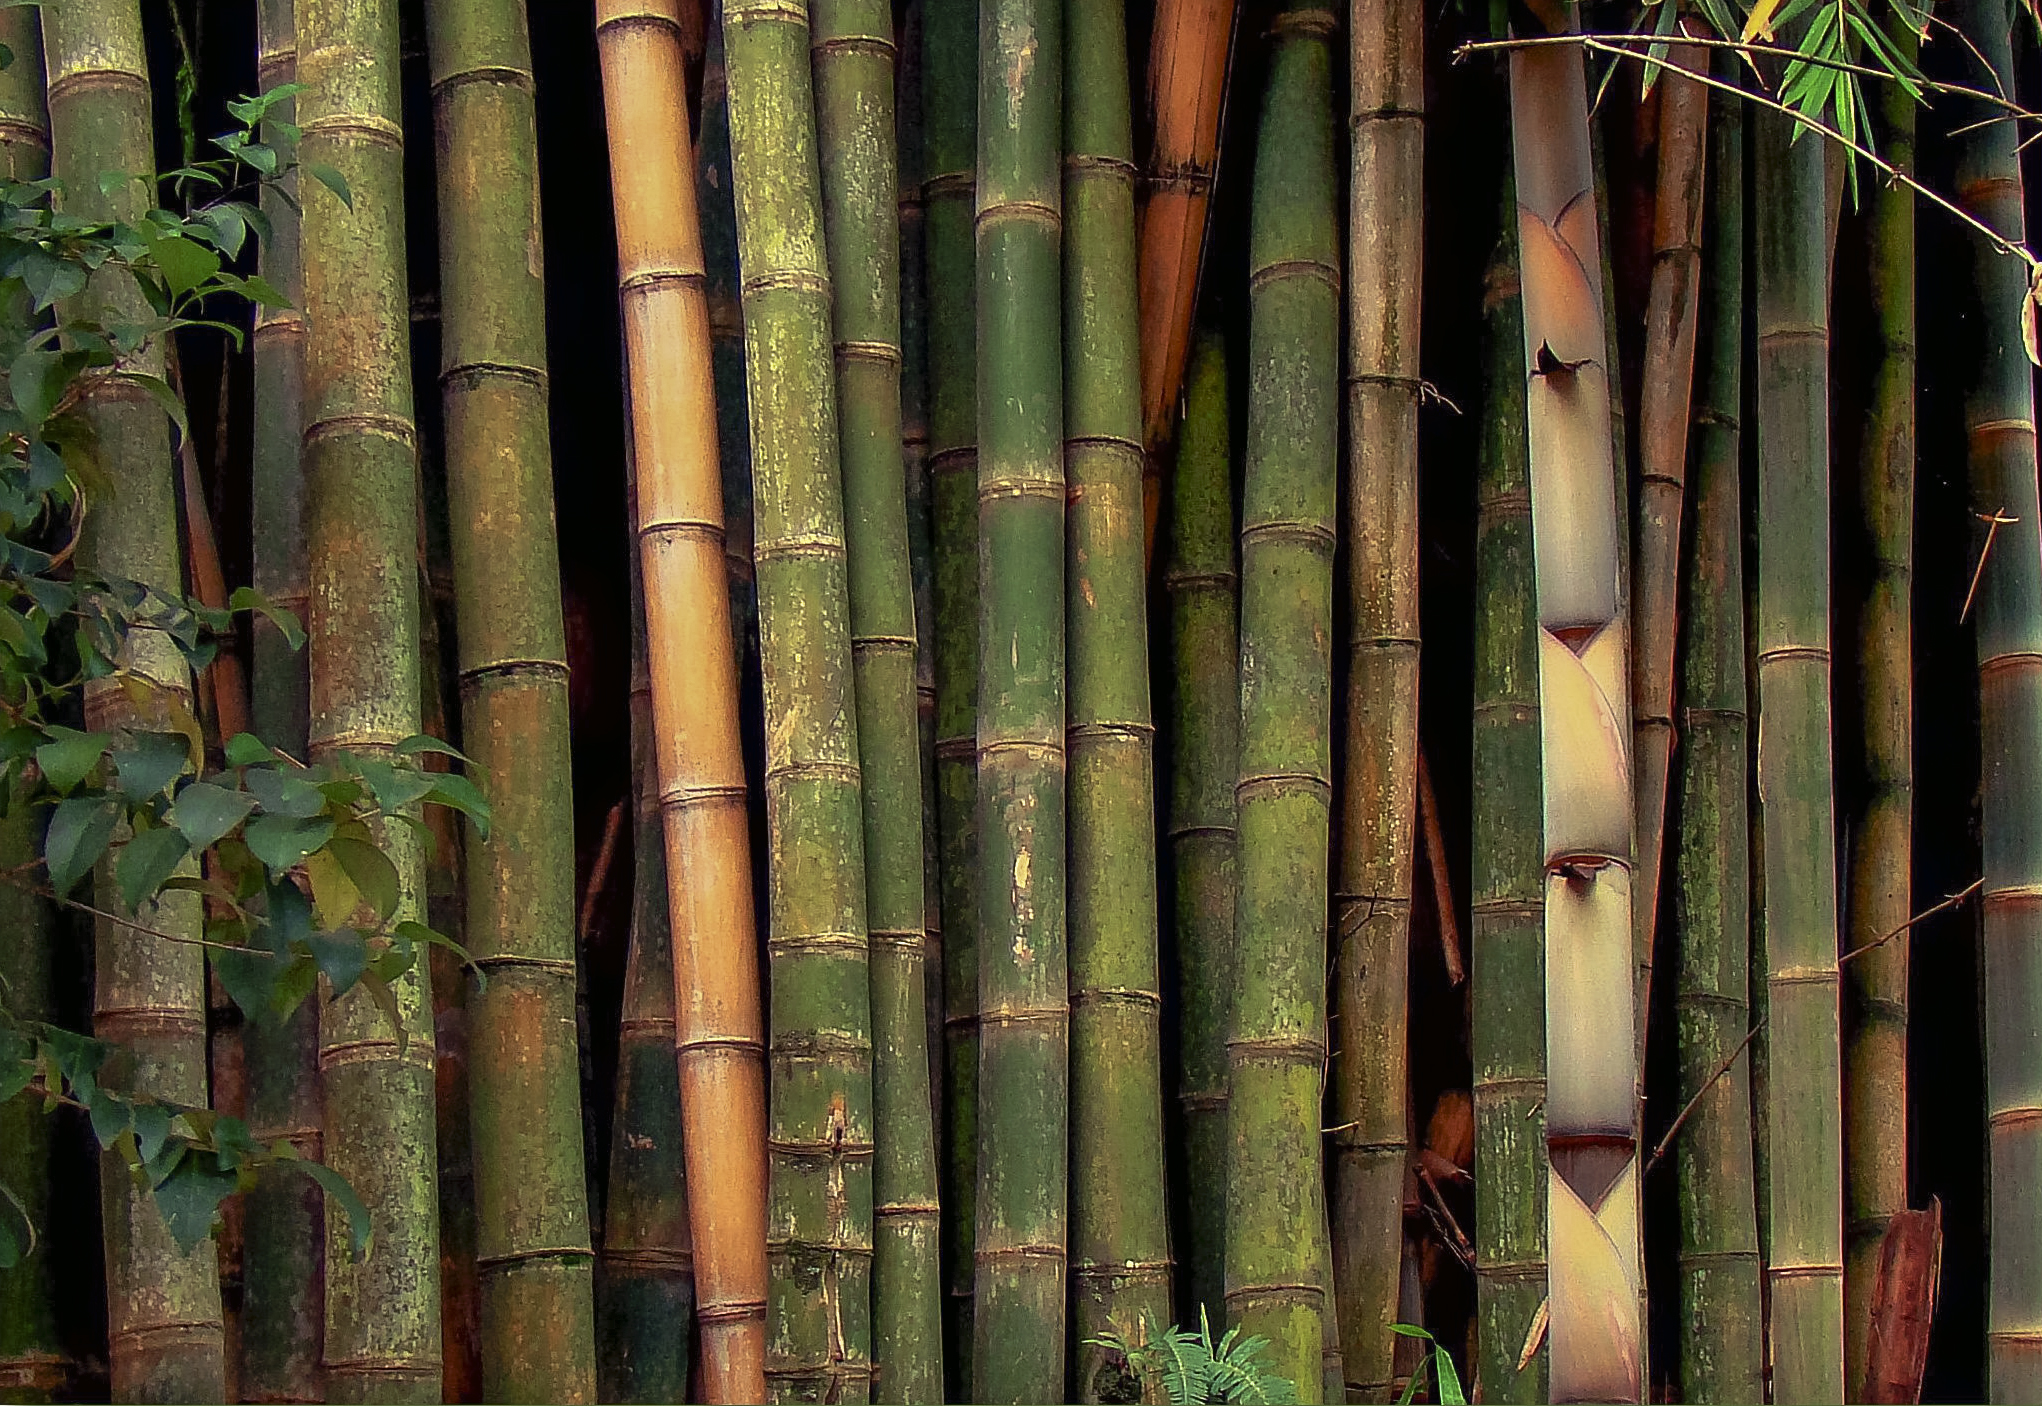 Bamboo a Natural Material